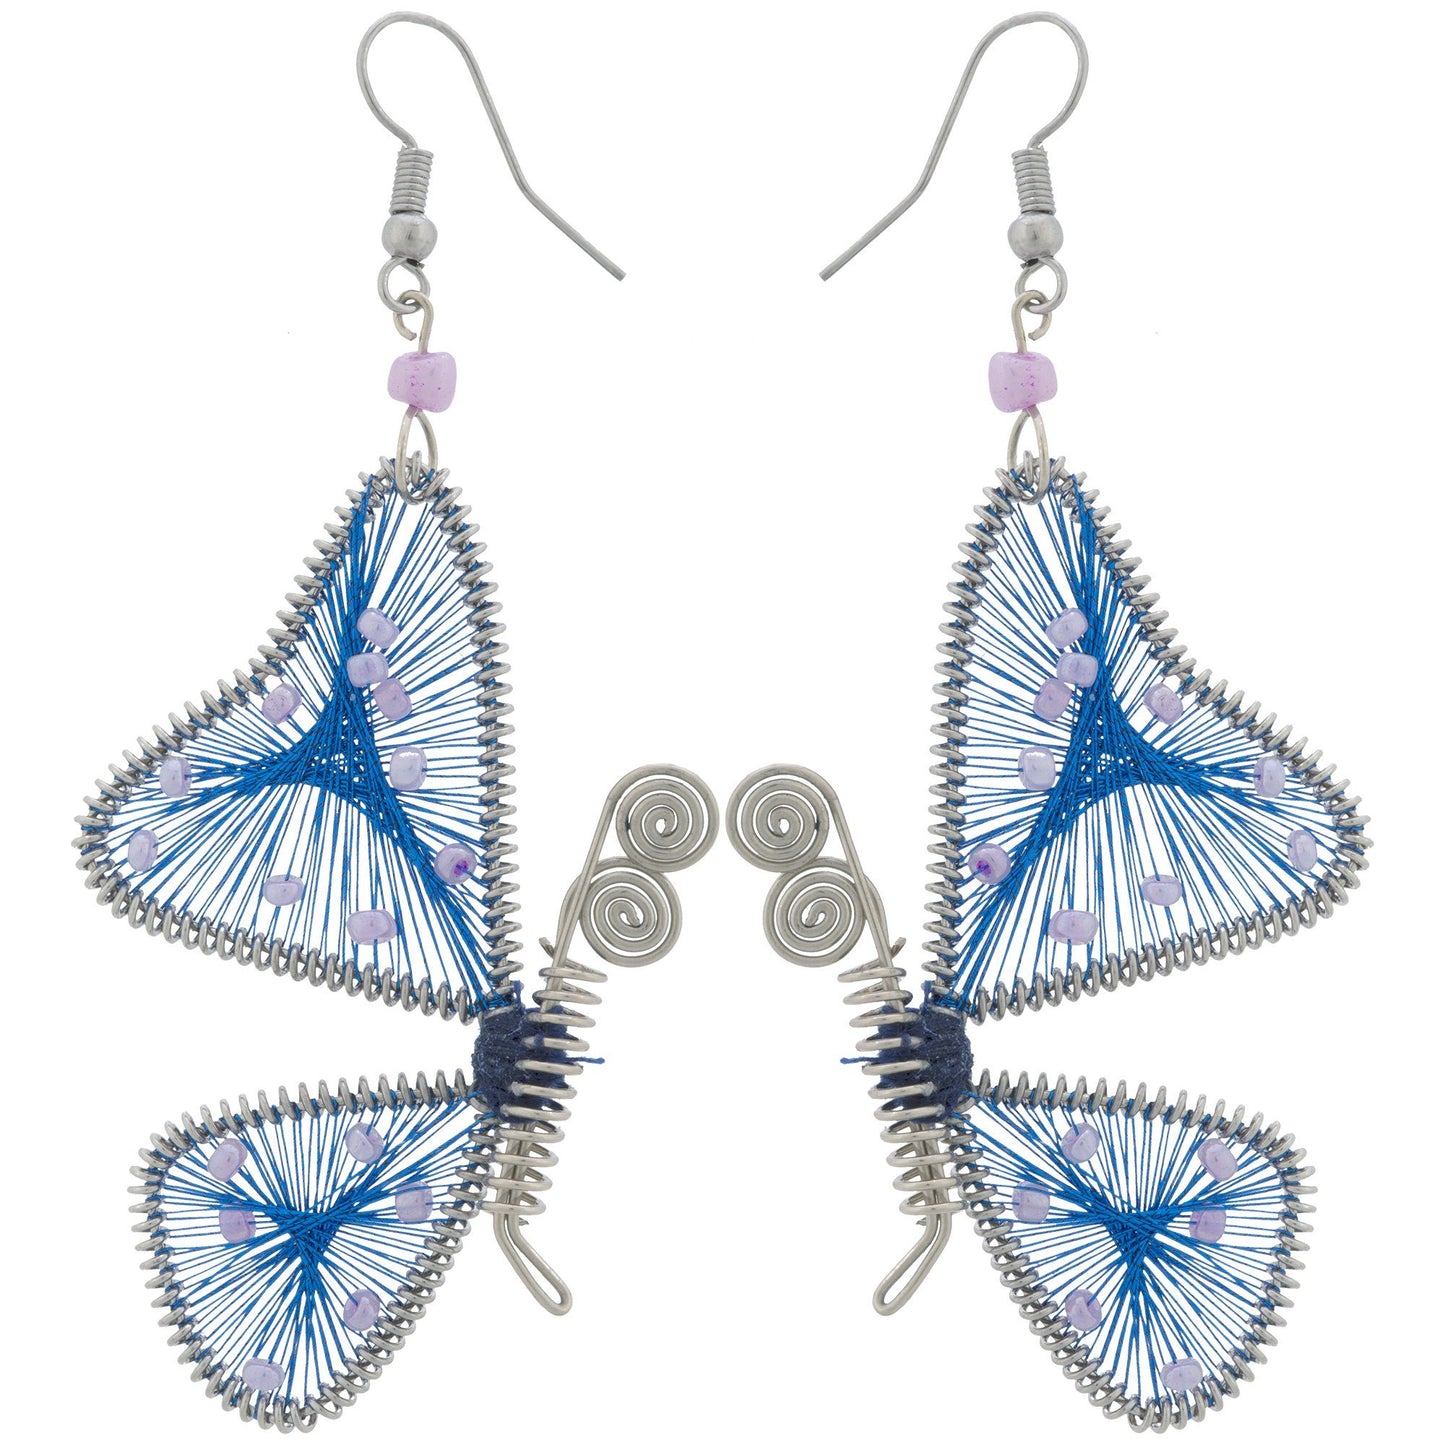 Threaded Butterfly Earrings